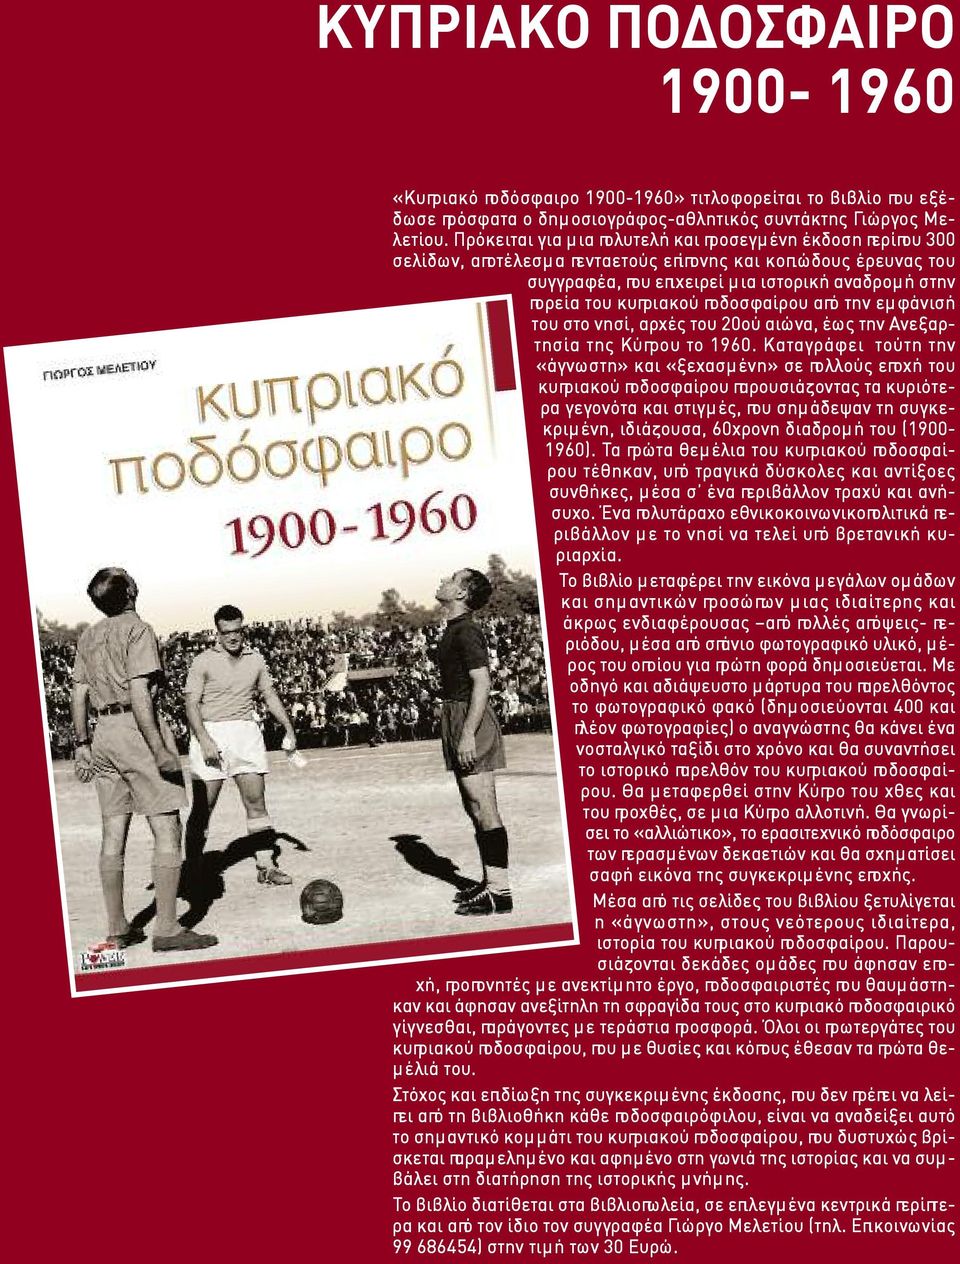 ποδοσφαίρου από την εμφάνισή του στο νησί, αρχές του 20ού αιώνα, έως την Ανεξαρτησία της Κύπρου το 1960.